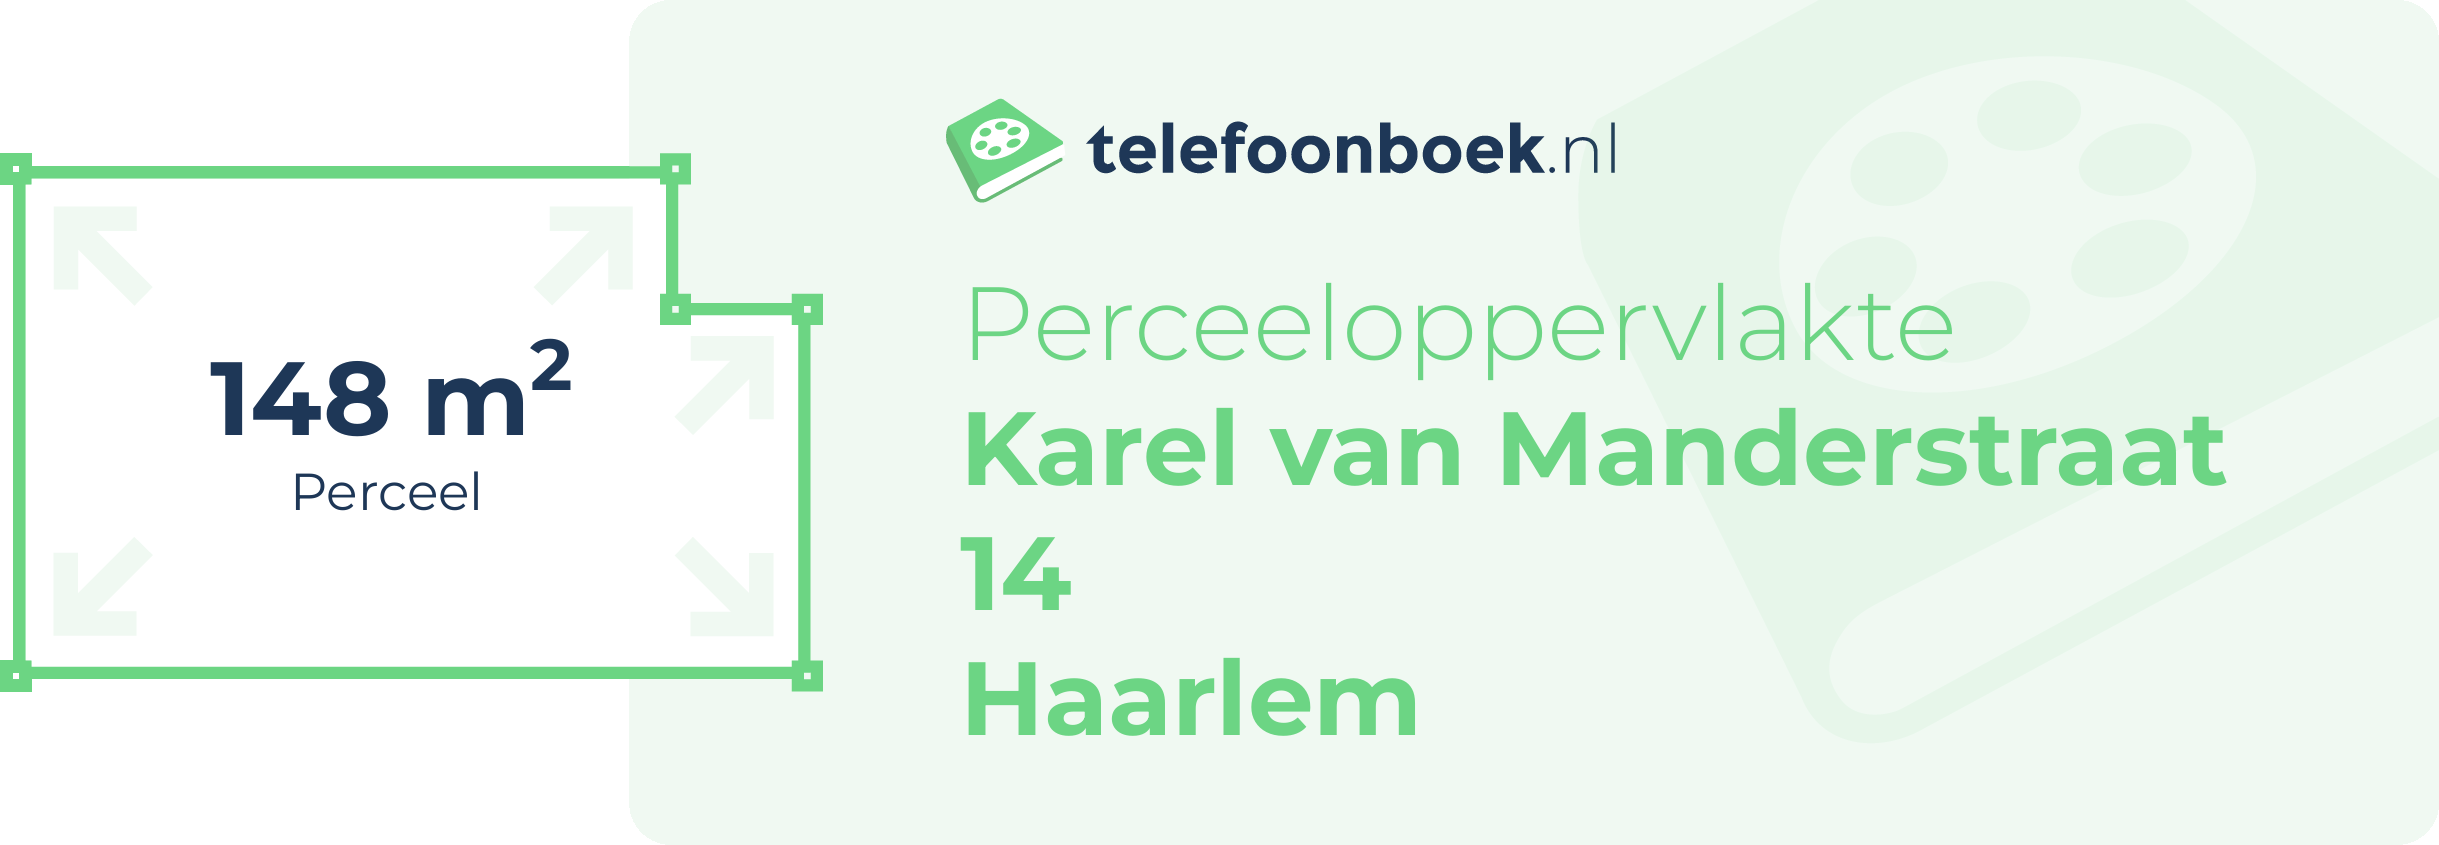 Perceeloppervlakte Karel Van Manderstraat 14 Haarlem